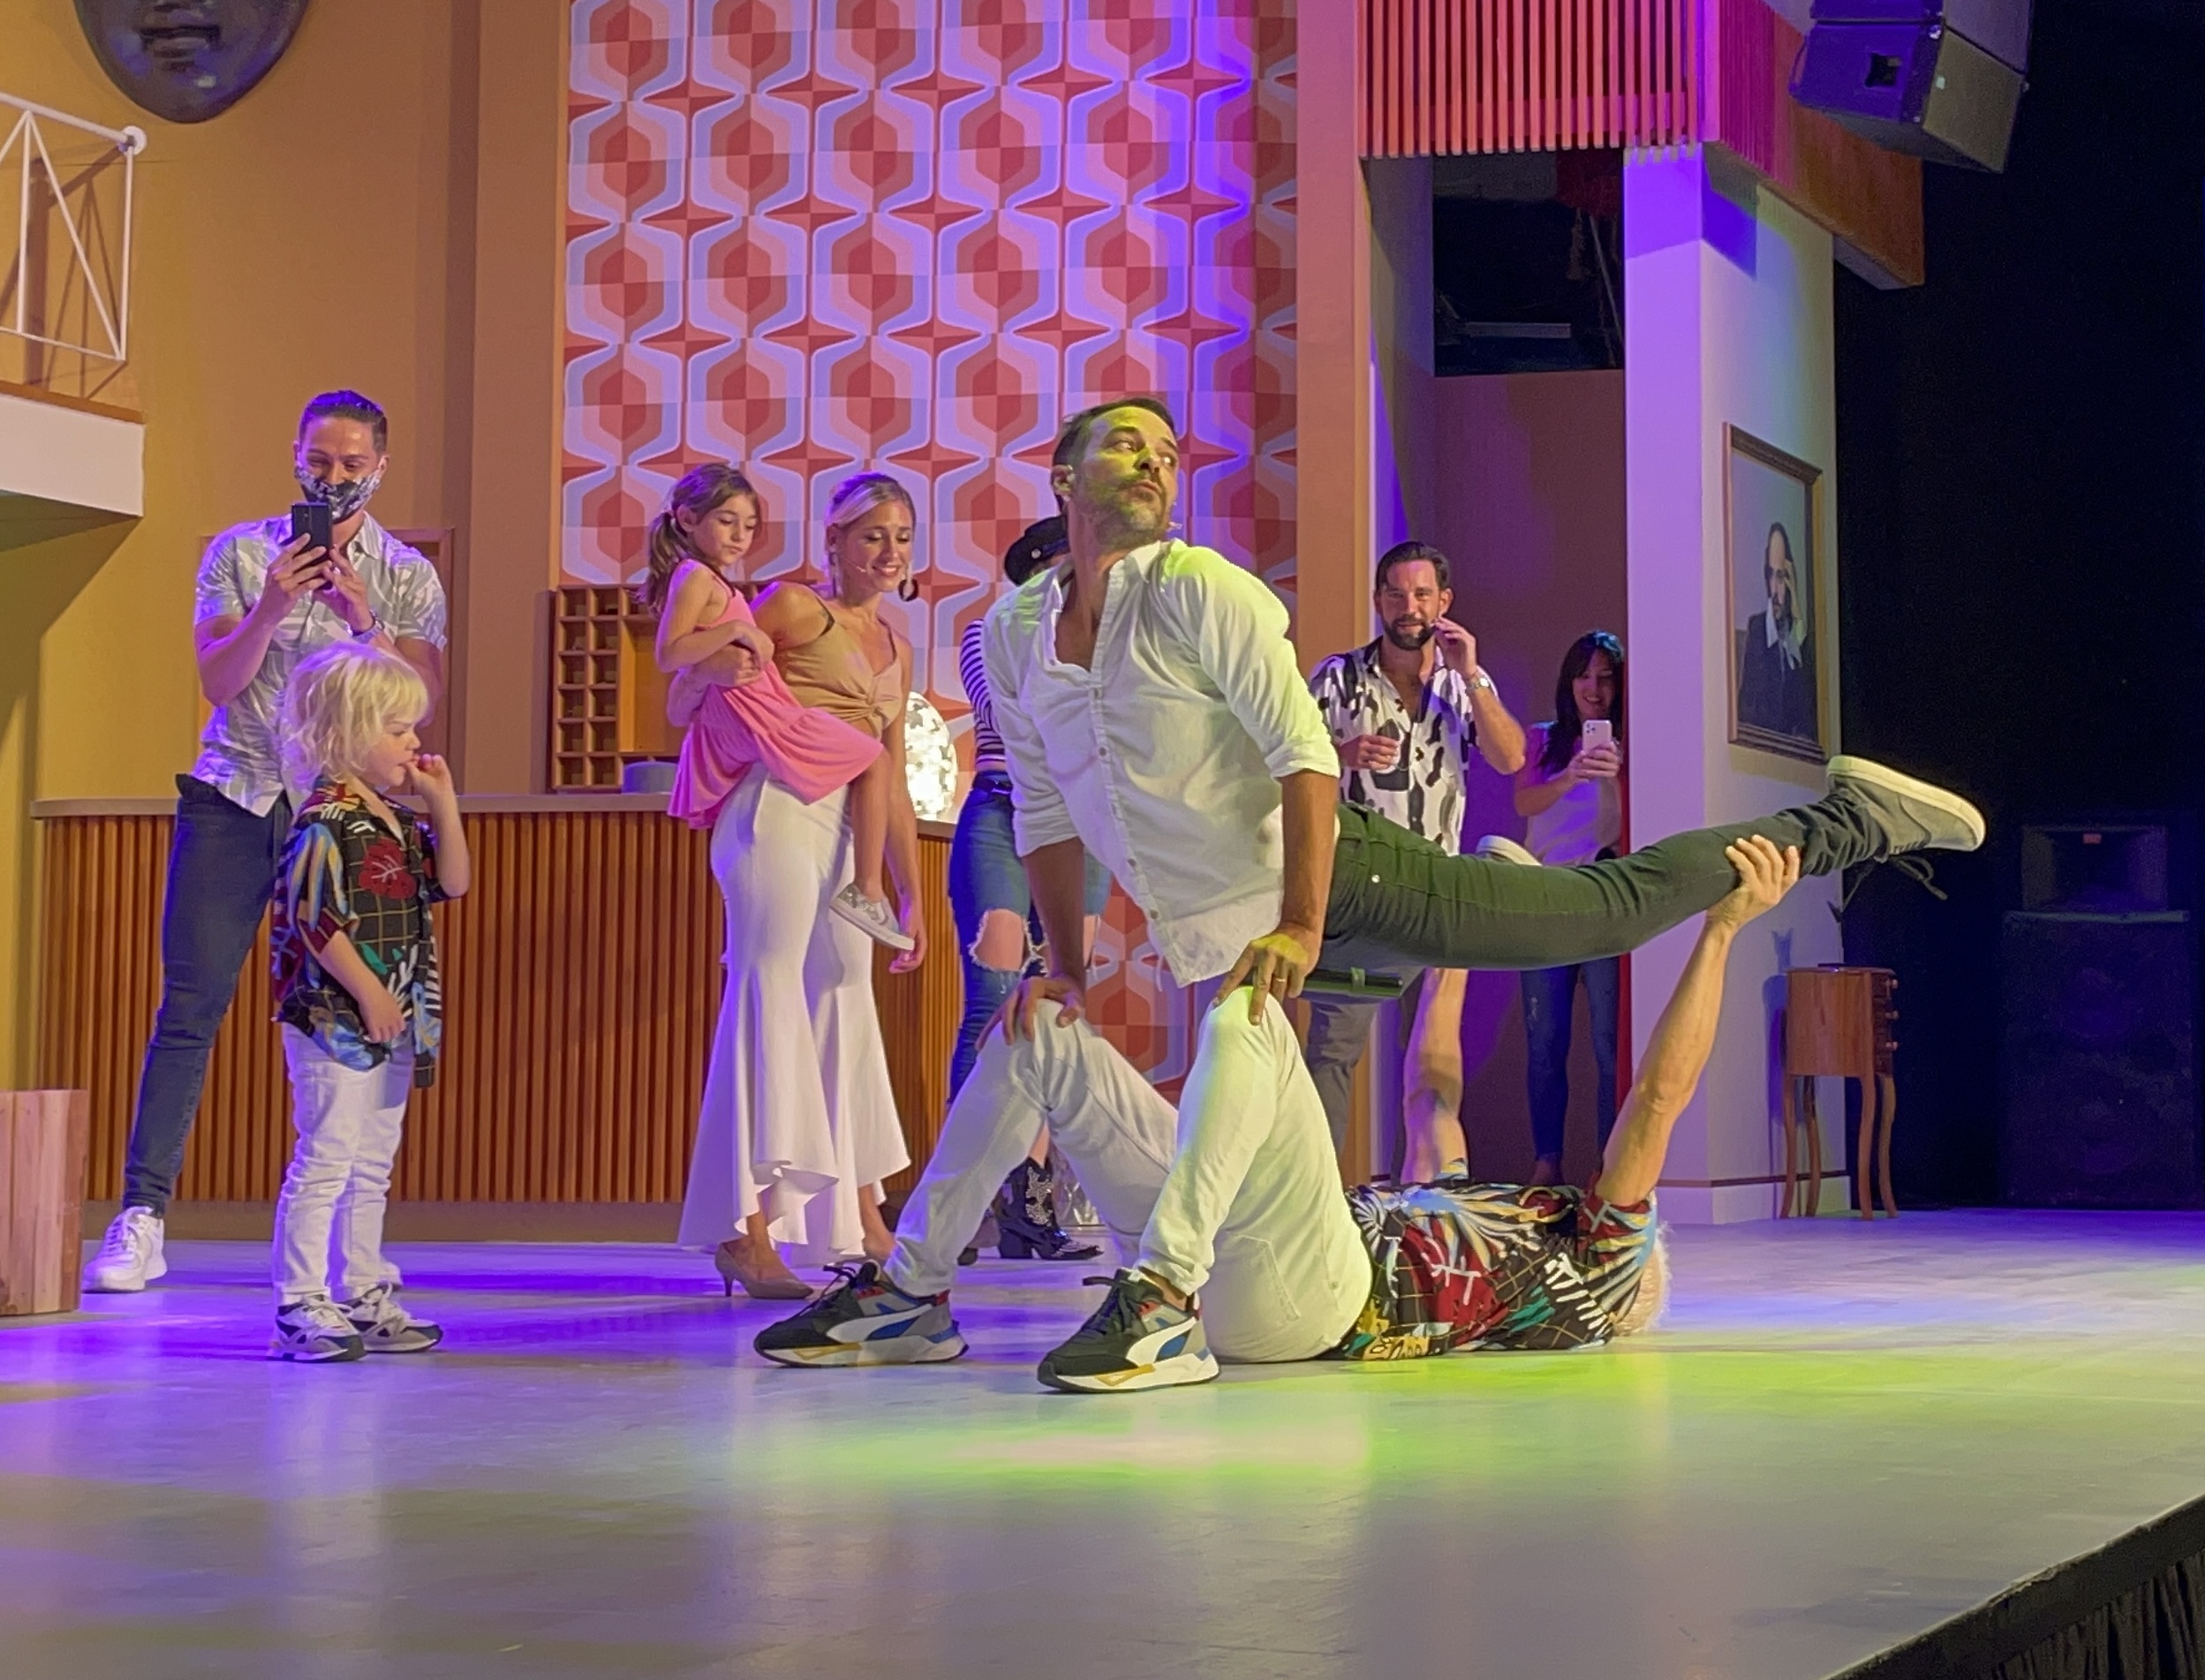 Carlos Paz: Pedro Alfonso recibió la visita de Flavio Mendoza y bailaron juntos en el escenario